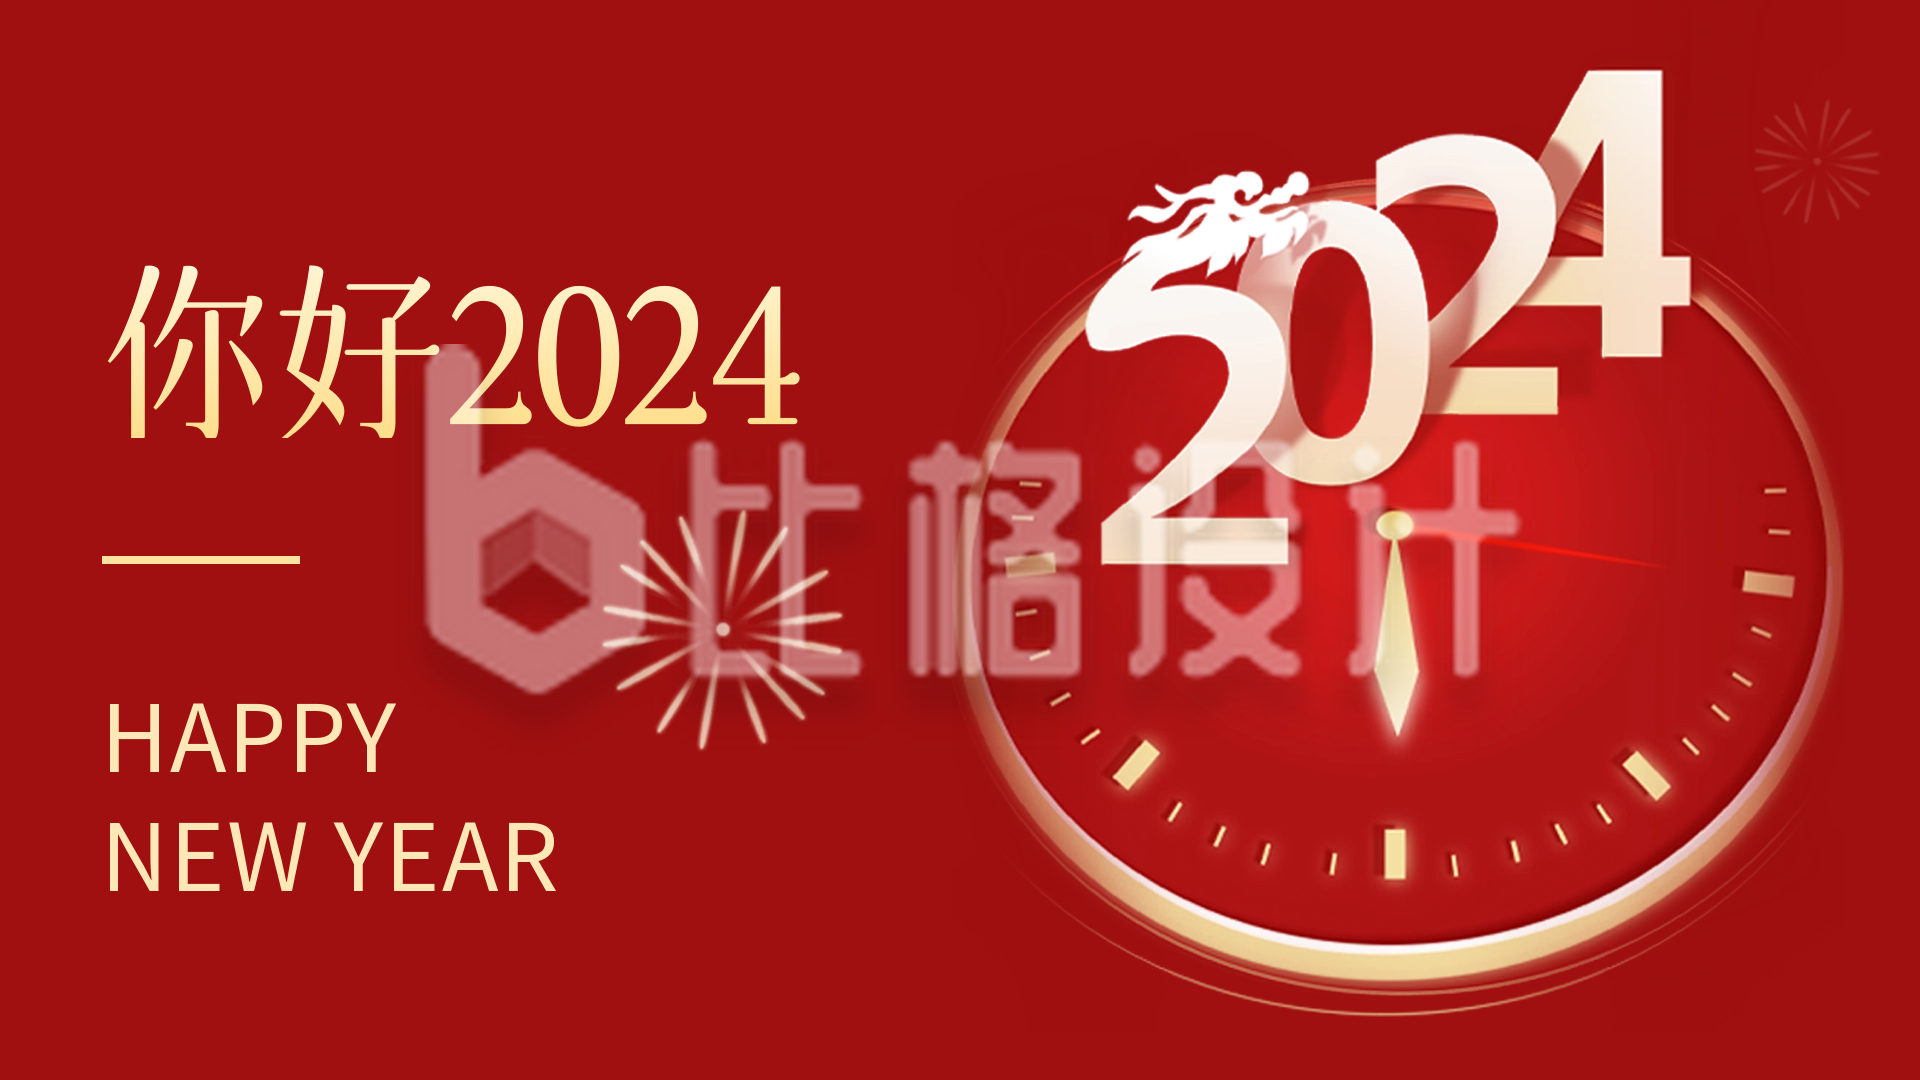 红色大气新年祝福视频封面